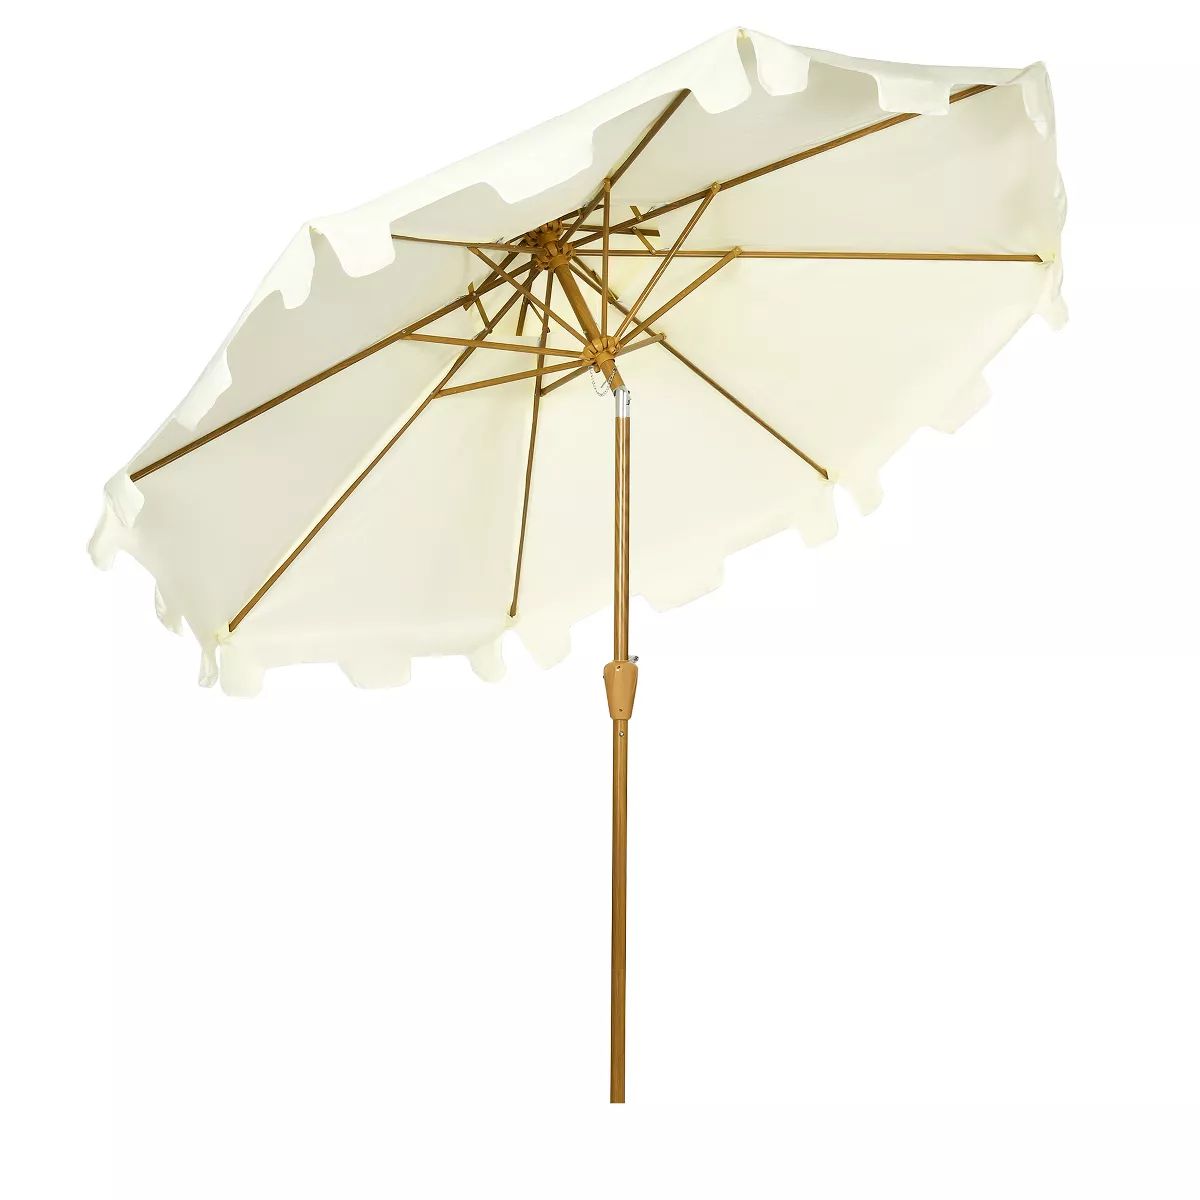 Outsunny 8.8' Patio Umbrella with Push Button Tilt and Crank Outdoor Market Table Umbrella, Cream... | Target